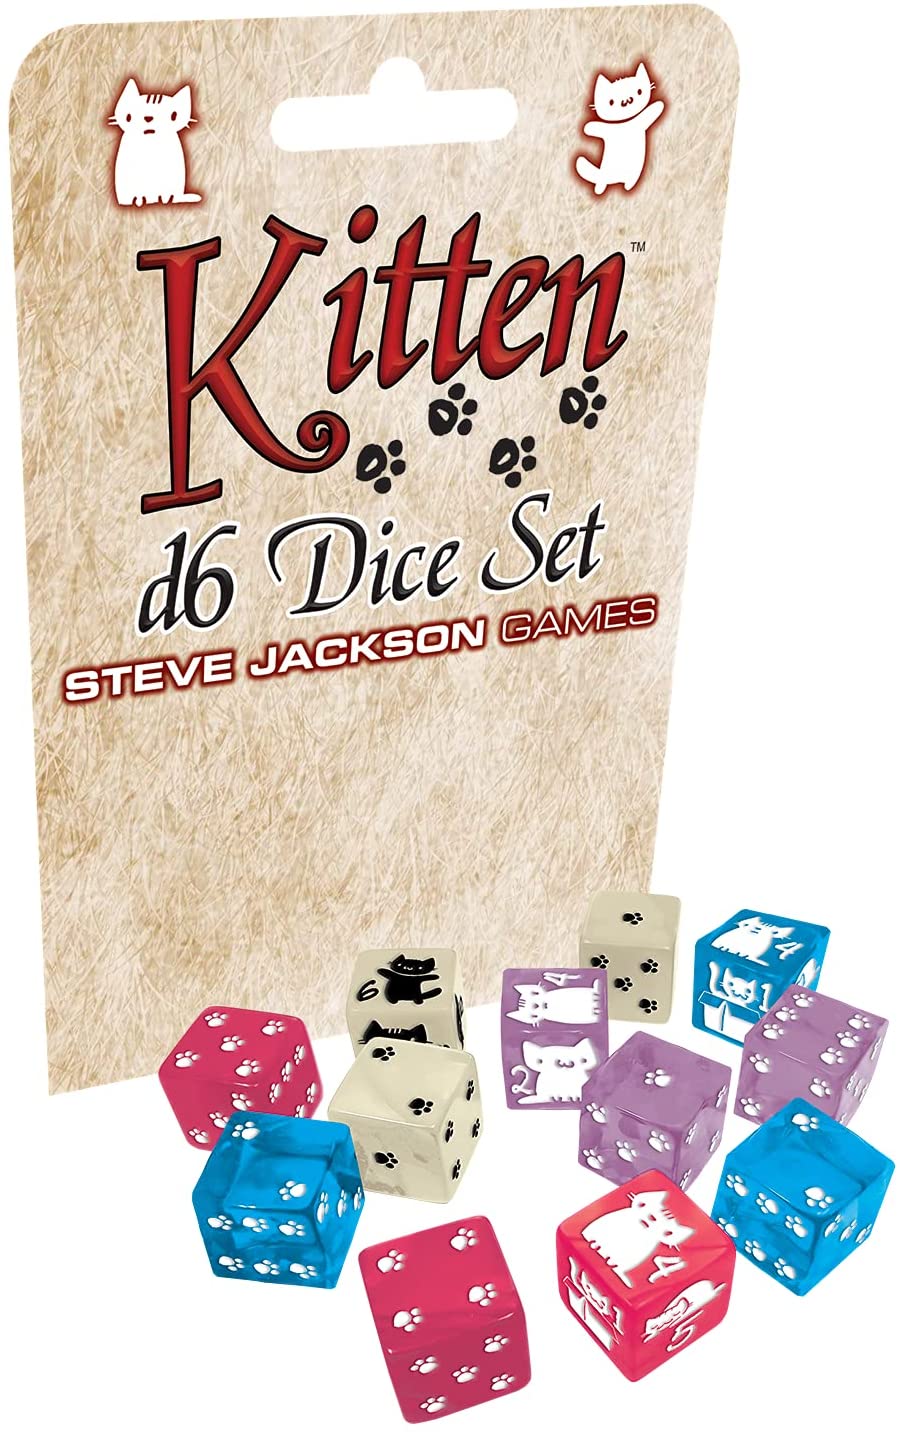 Kitten: D6 Dice Set